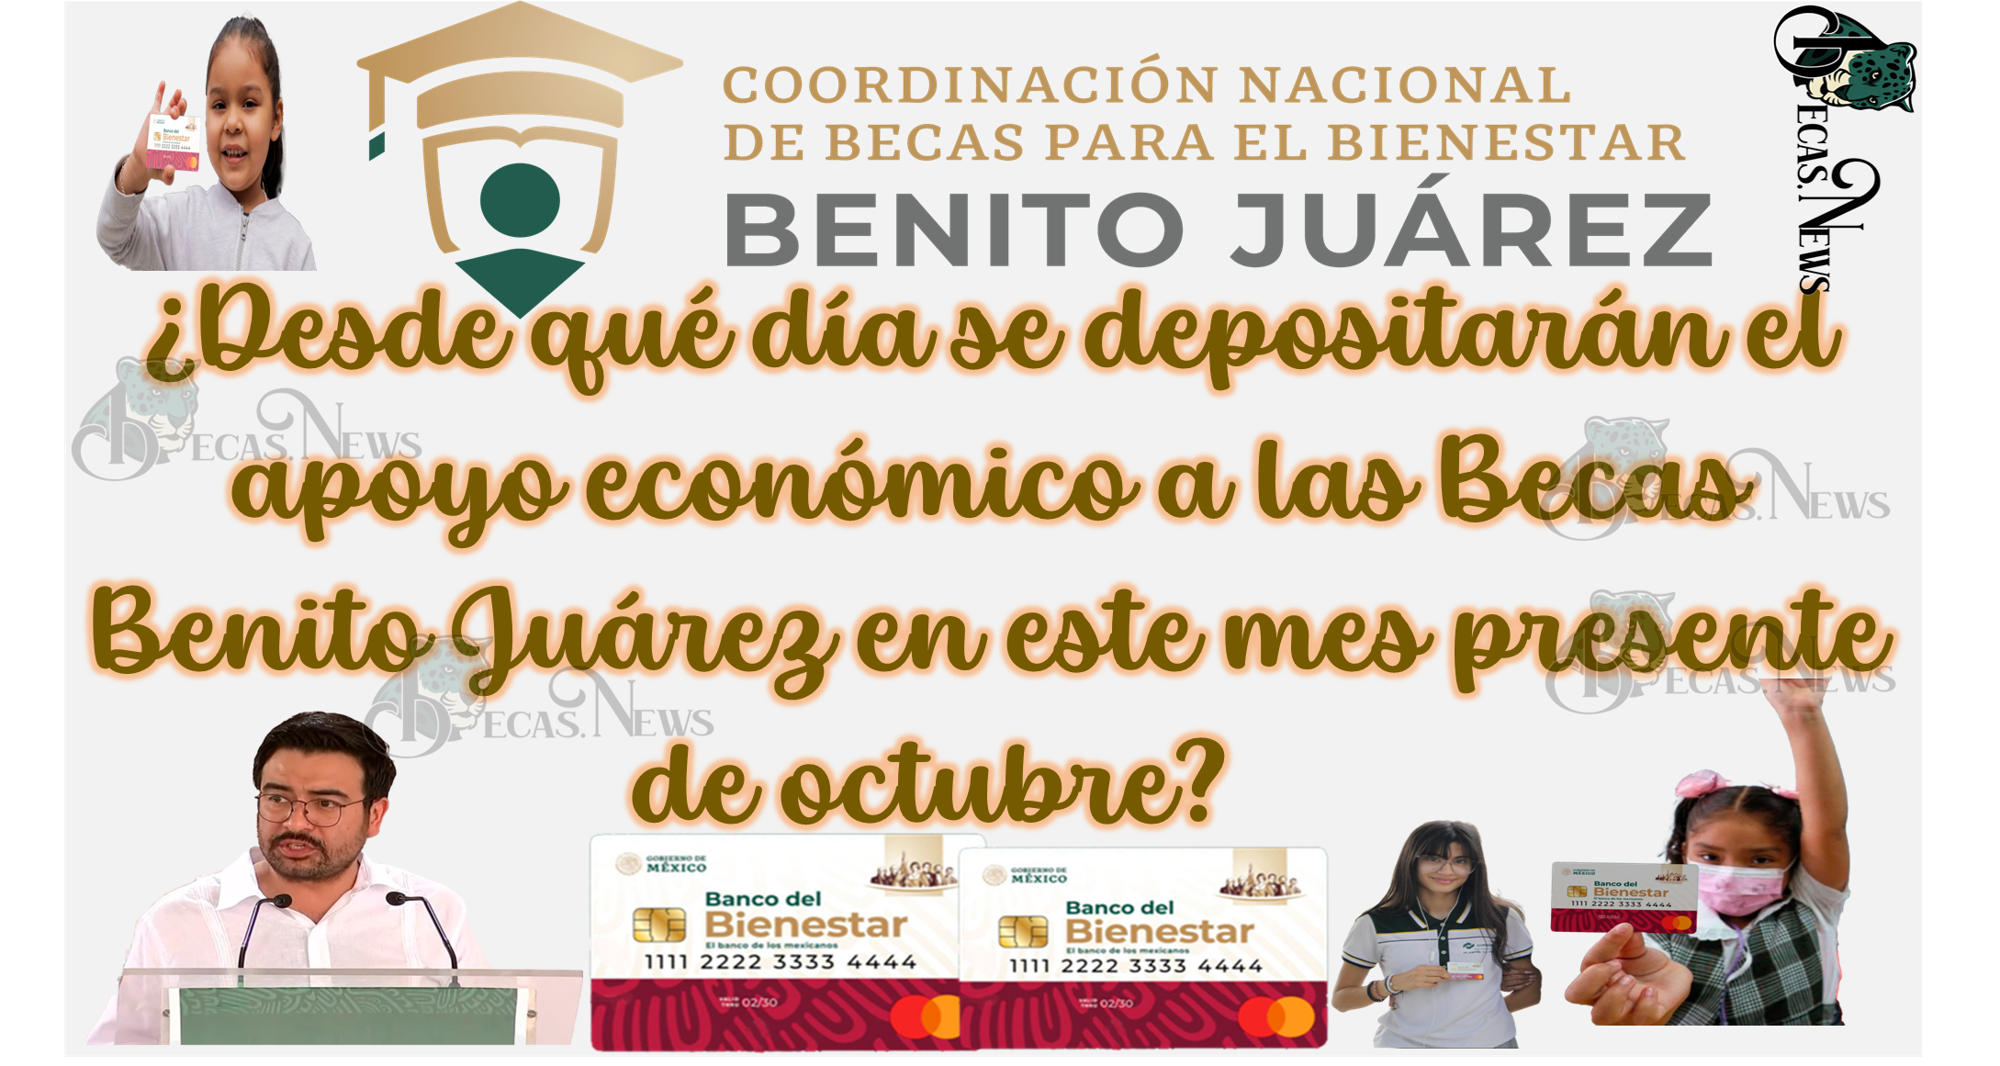 ¿Desde qué día se depositarán el apoyo económico a las Becas Benito Juárez en este mes presente de octubre? 